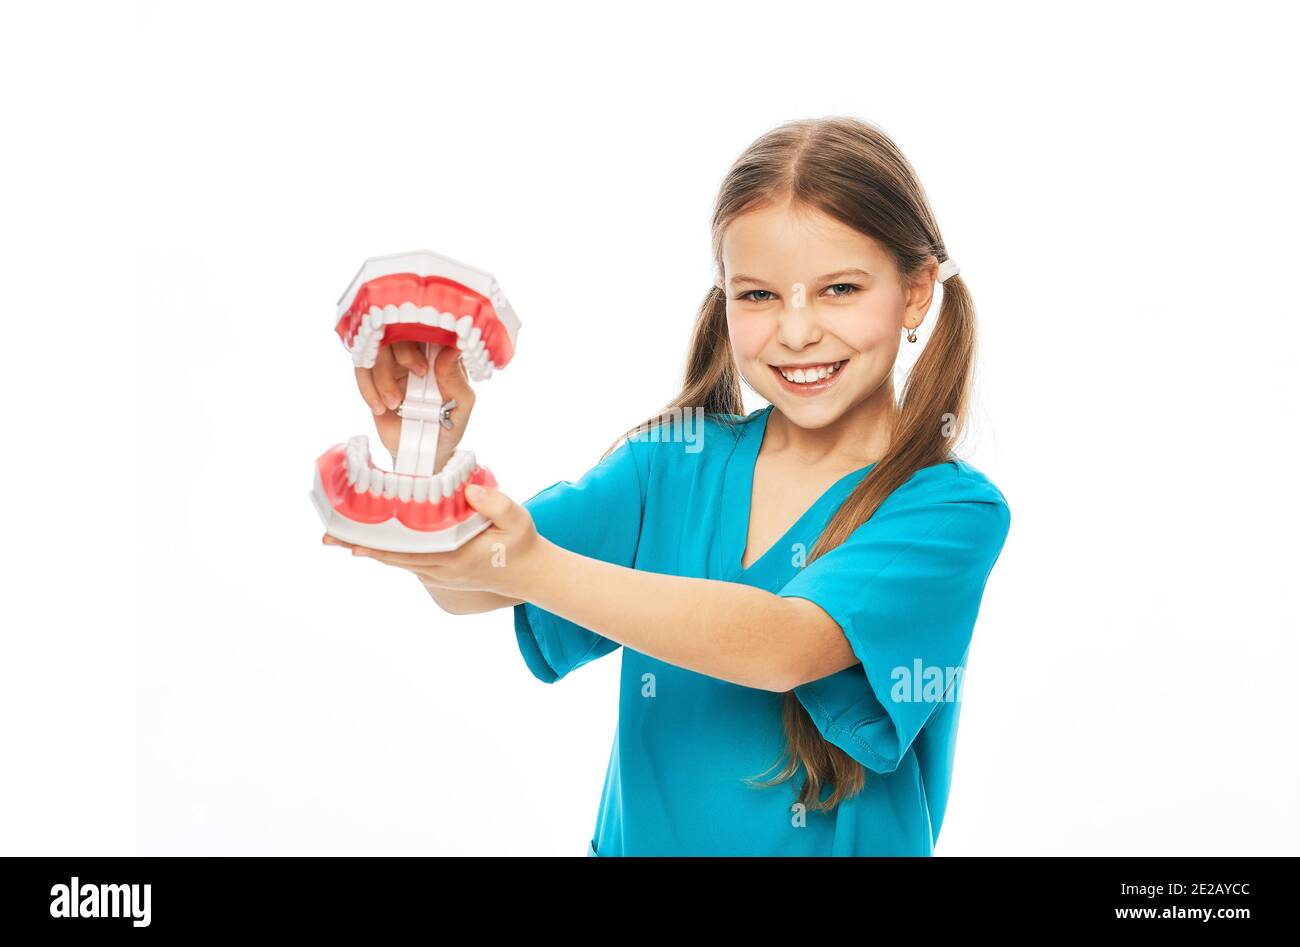 Concetto di salute dentale per bambini. Ragazza carina che mostra un modello anatomico di denti, su uno sfondo bianco Foto Stock